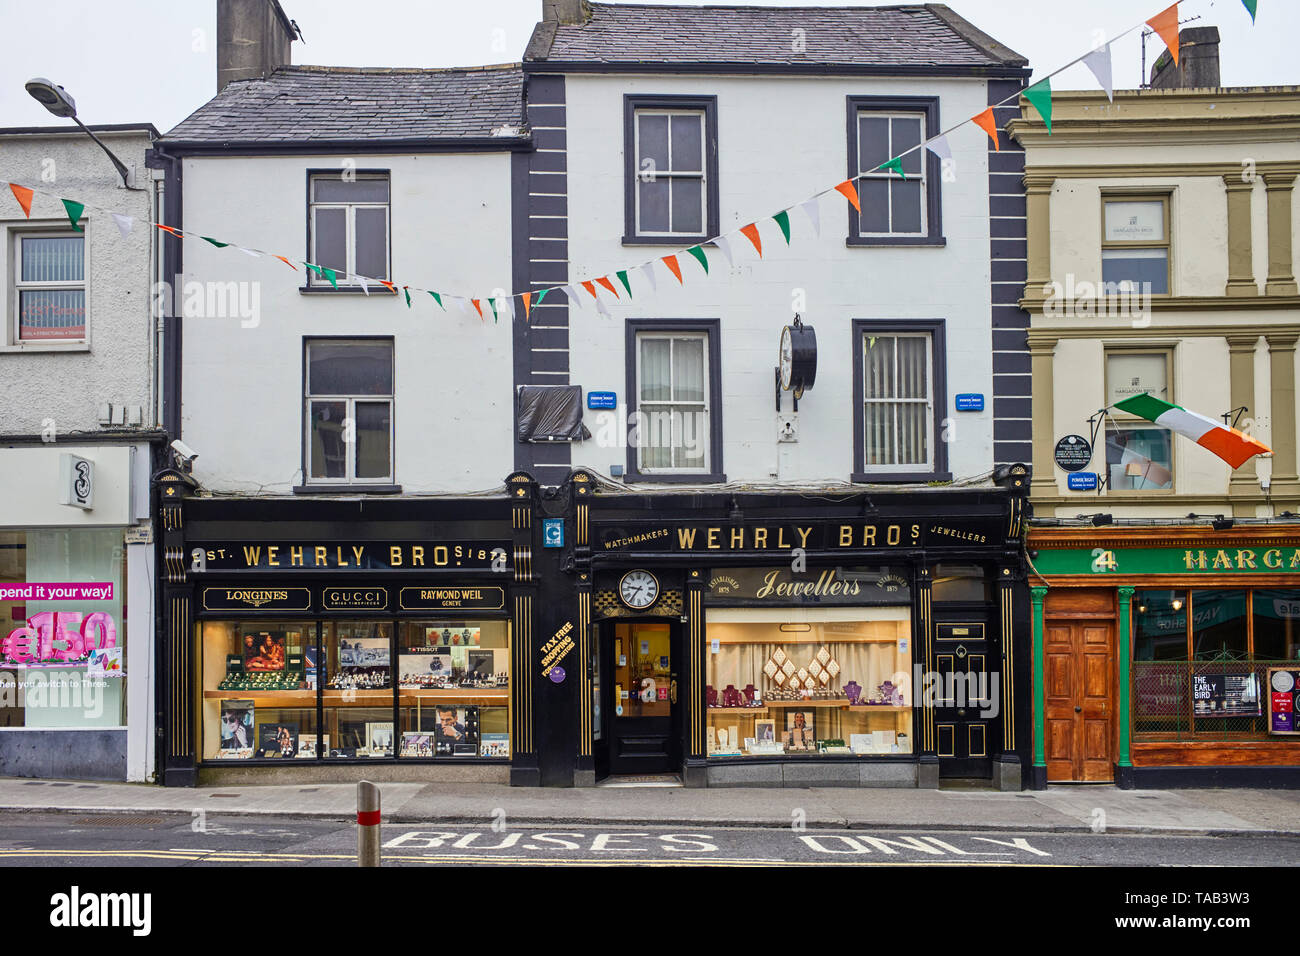 Wherly Bros gioiellerie nel centro di Sligo, Irlanda Foto Stock